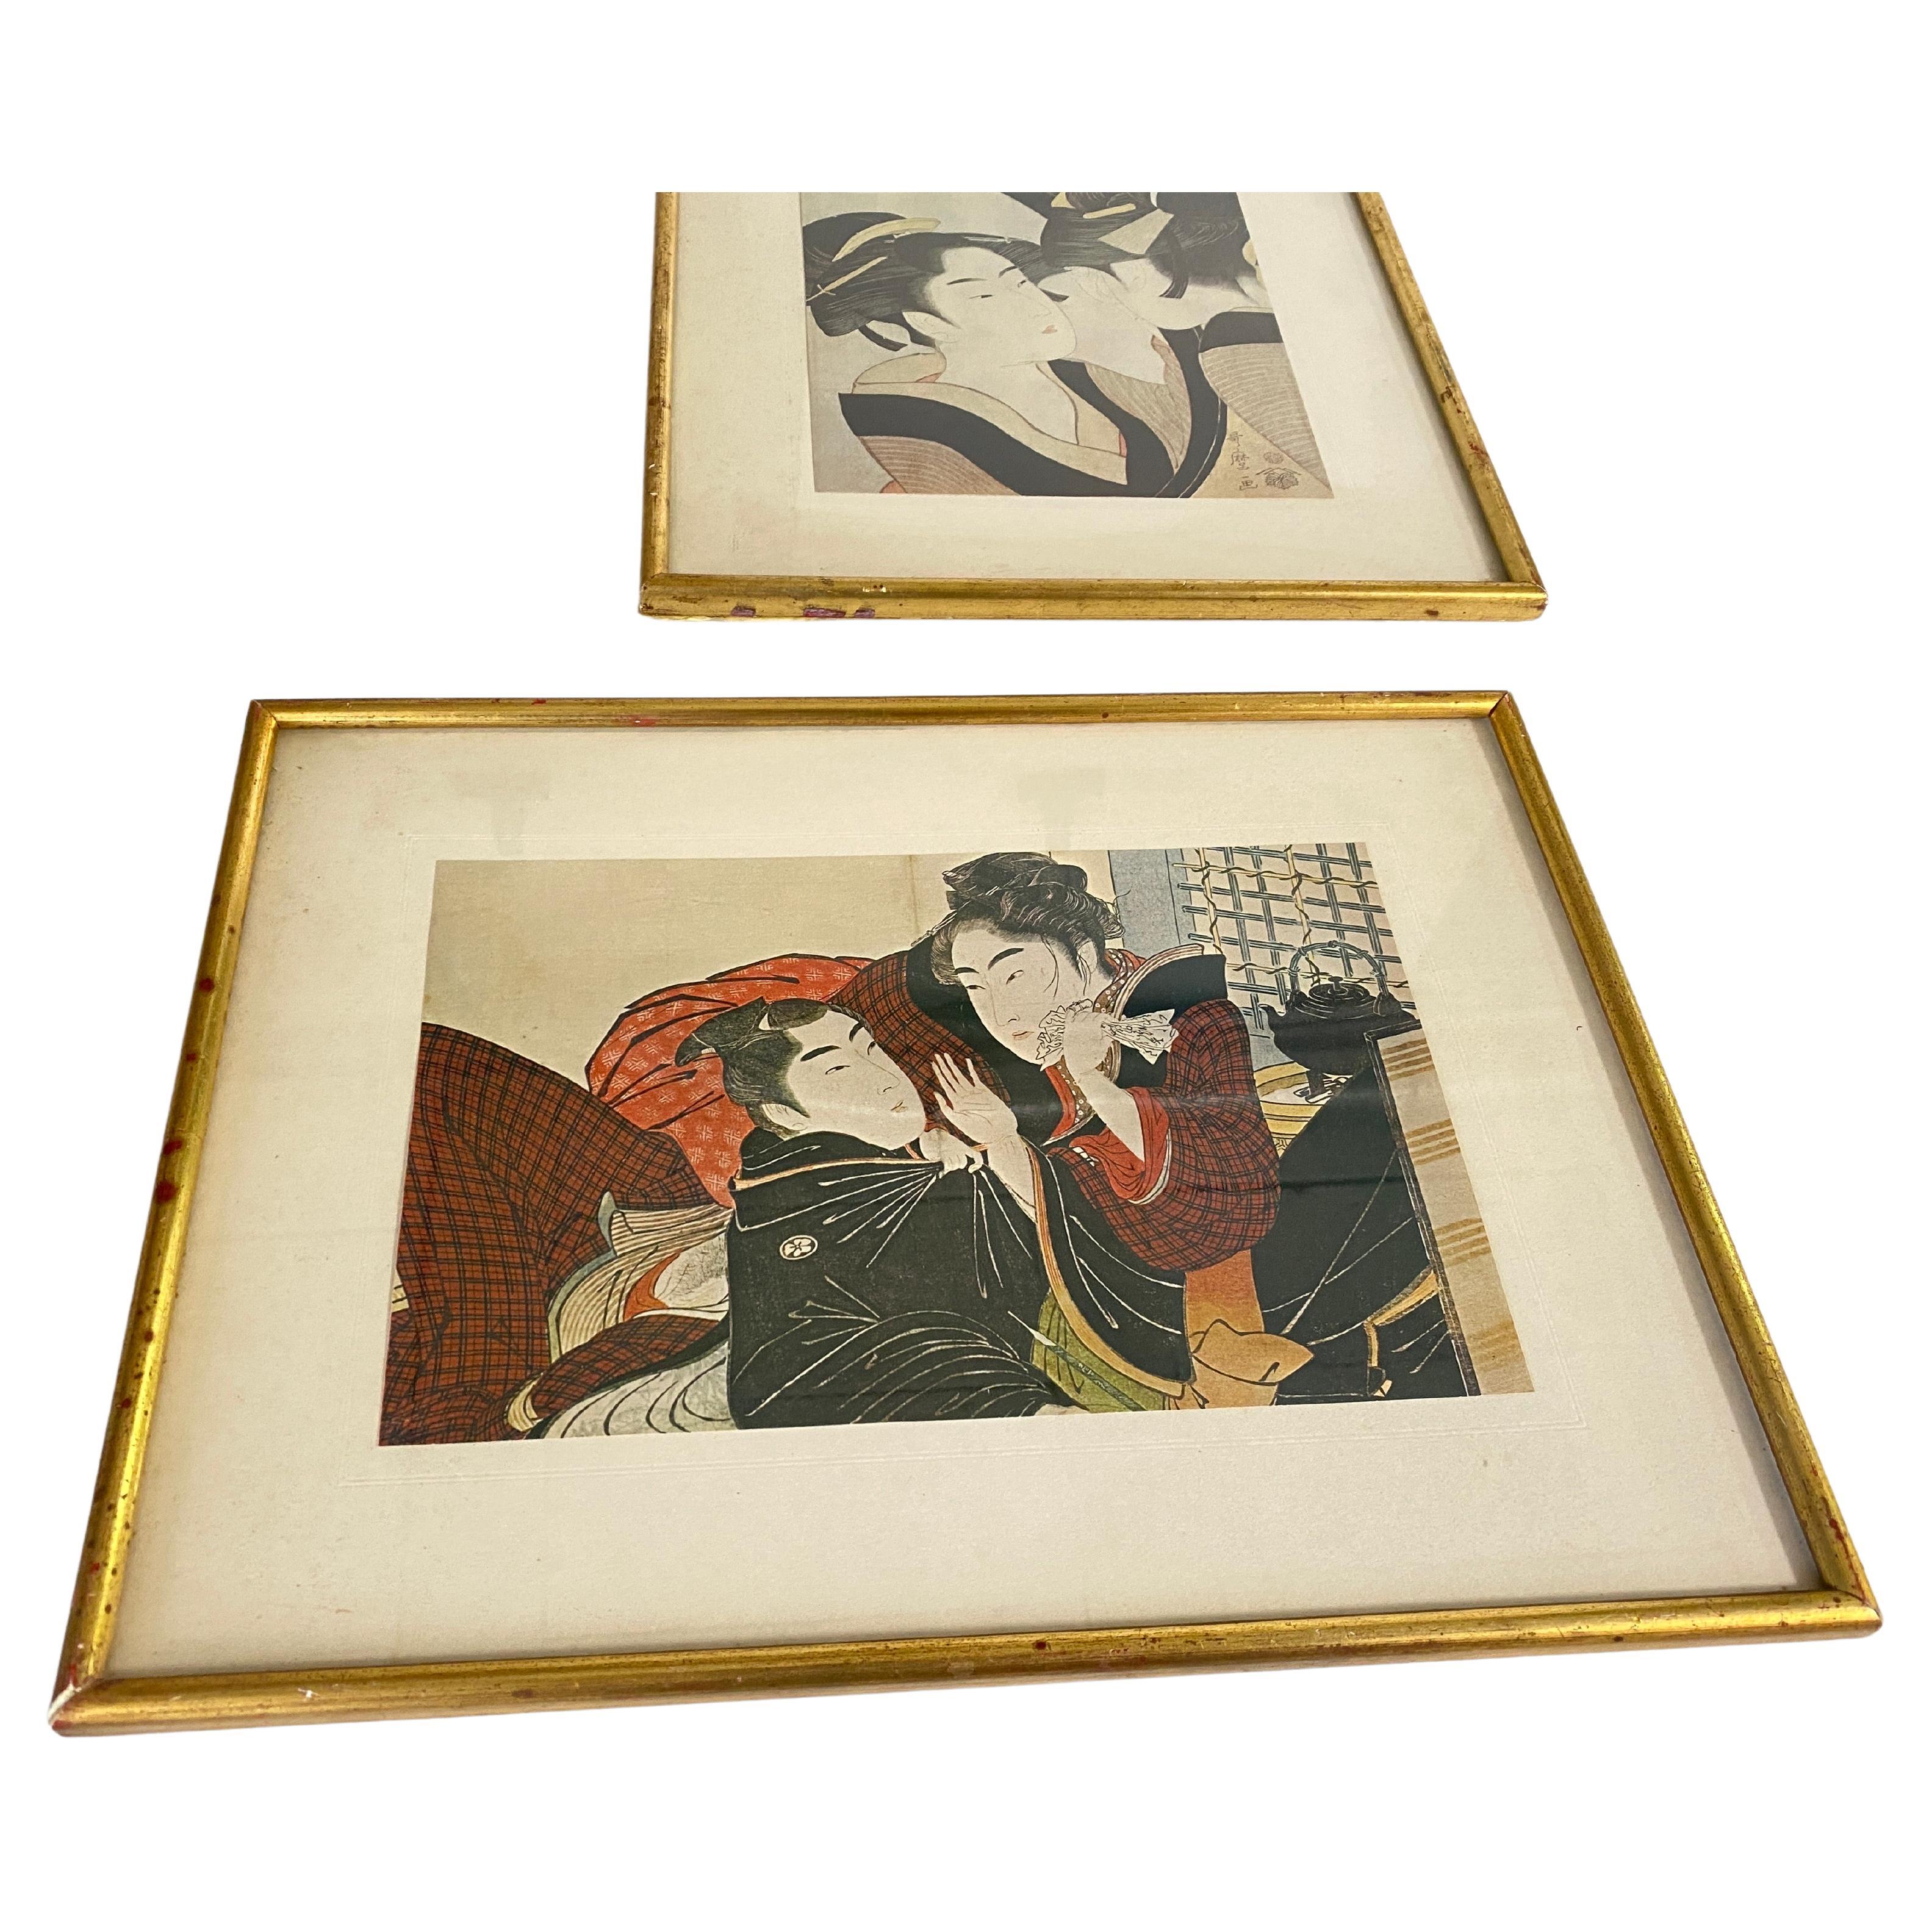 Ensemble très décoratif de 2 reproductions d'estampes japonaises. Cadre doré.
Japon 20e siècle.